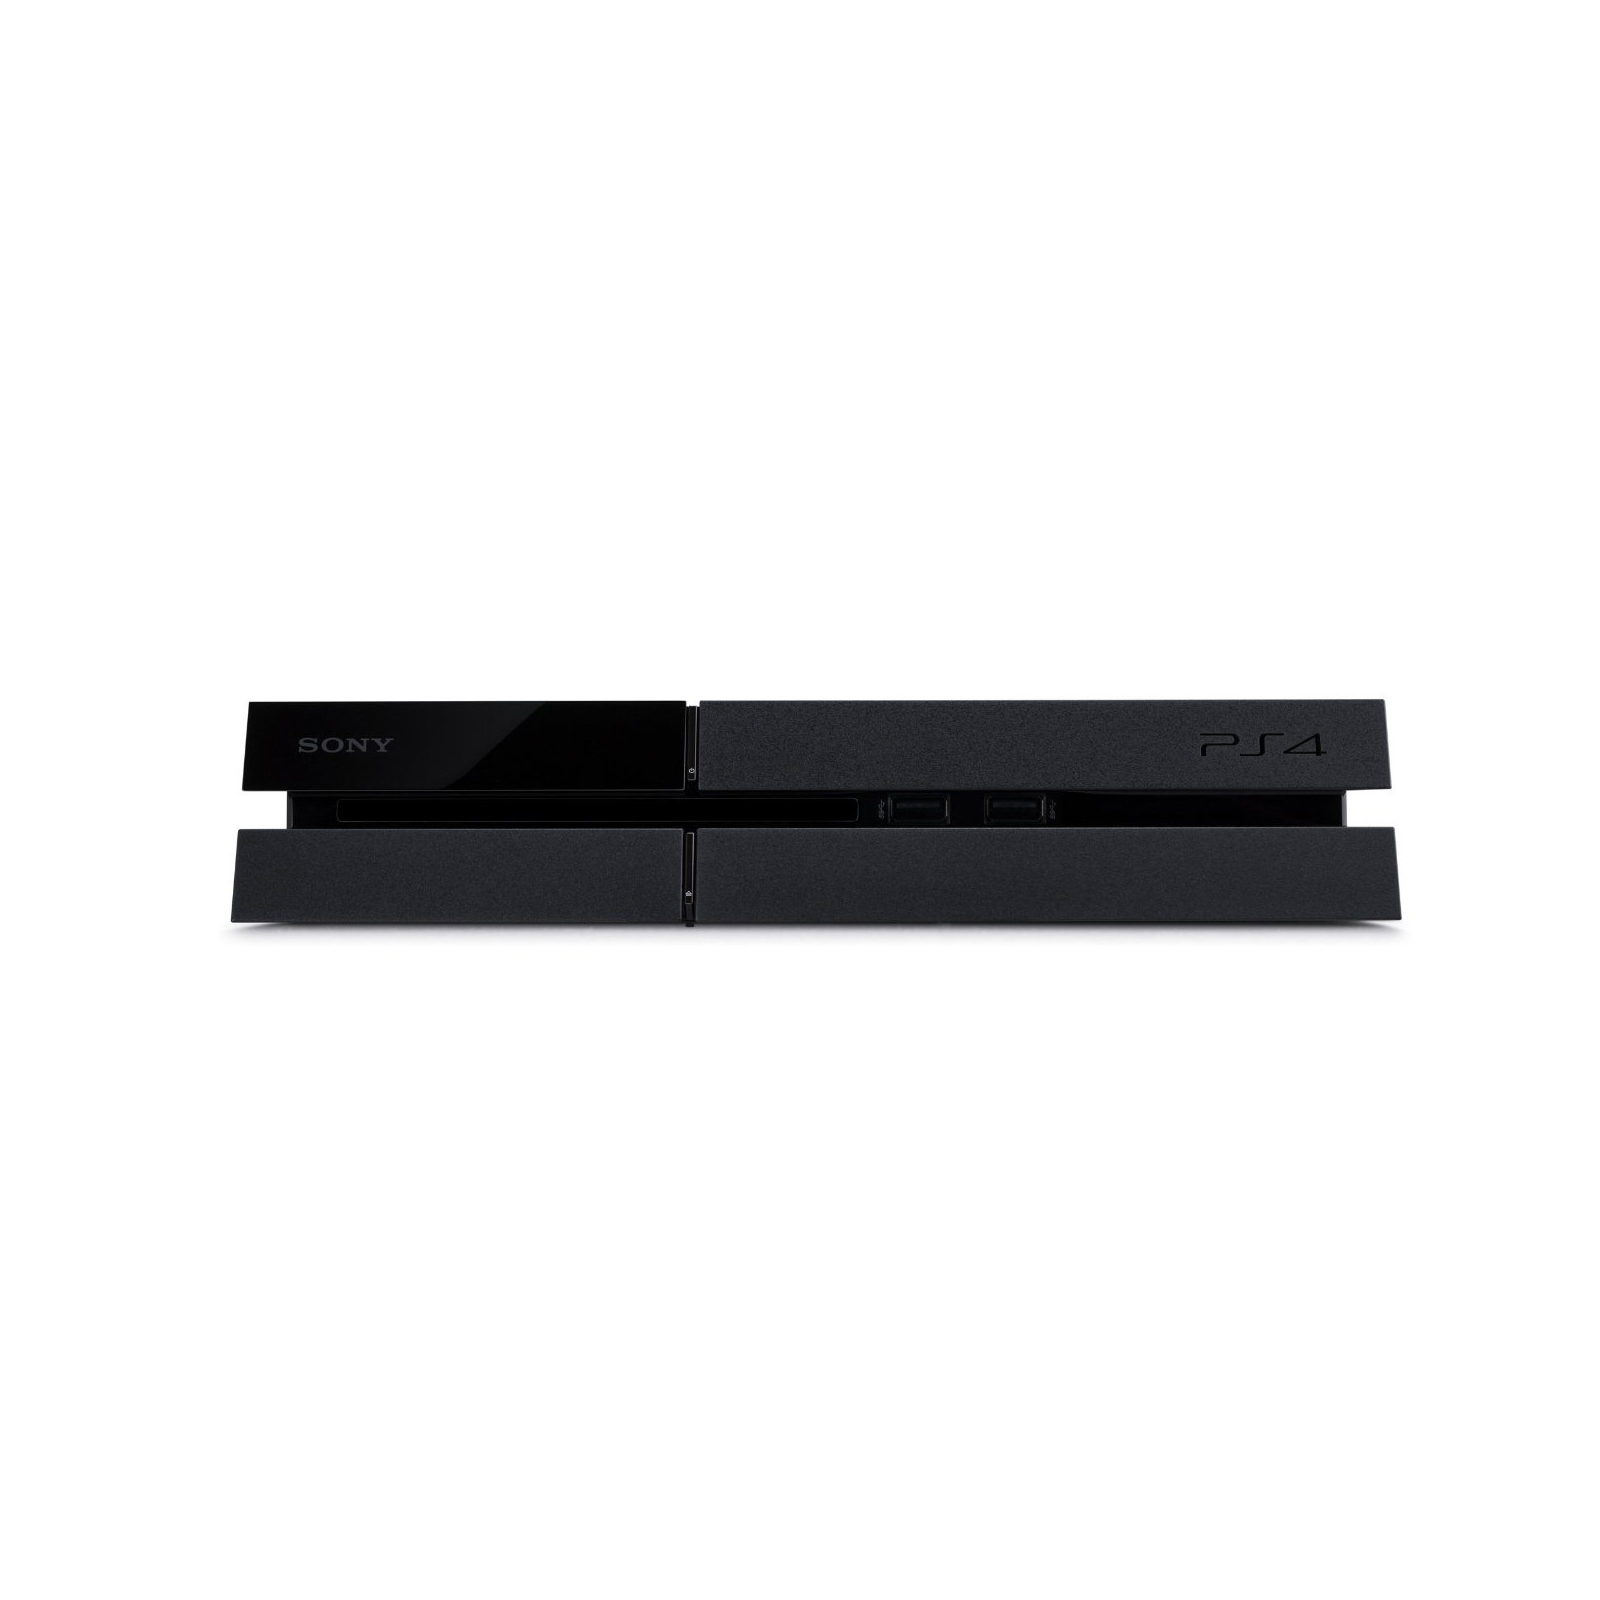 Игровая консоль Sony PlayStation 4 1TB (CUH-1208) + 2 Dualshock 4 (200621) изображение 4